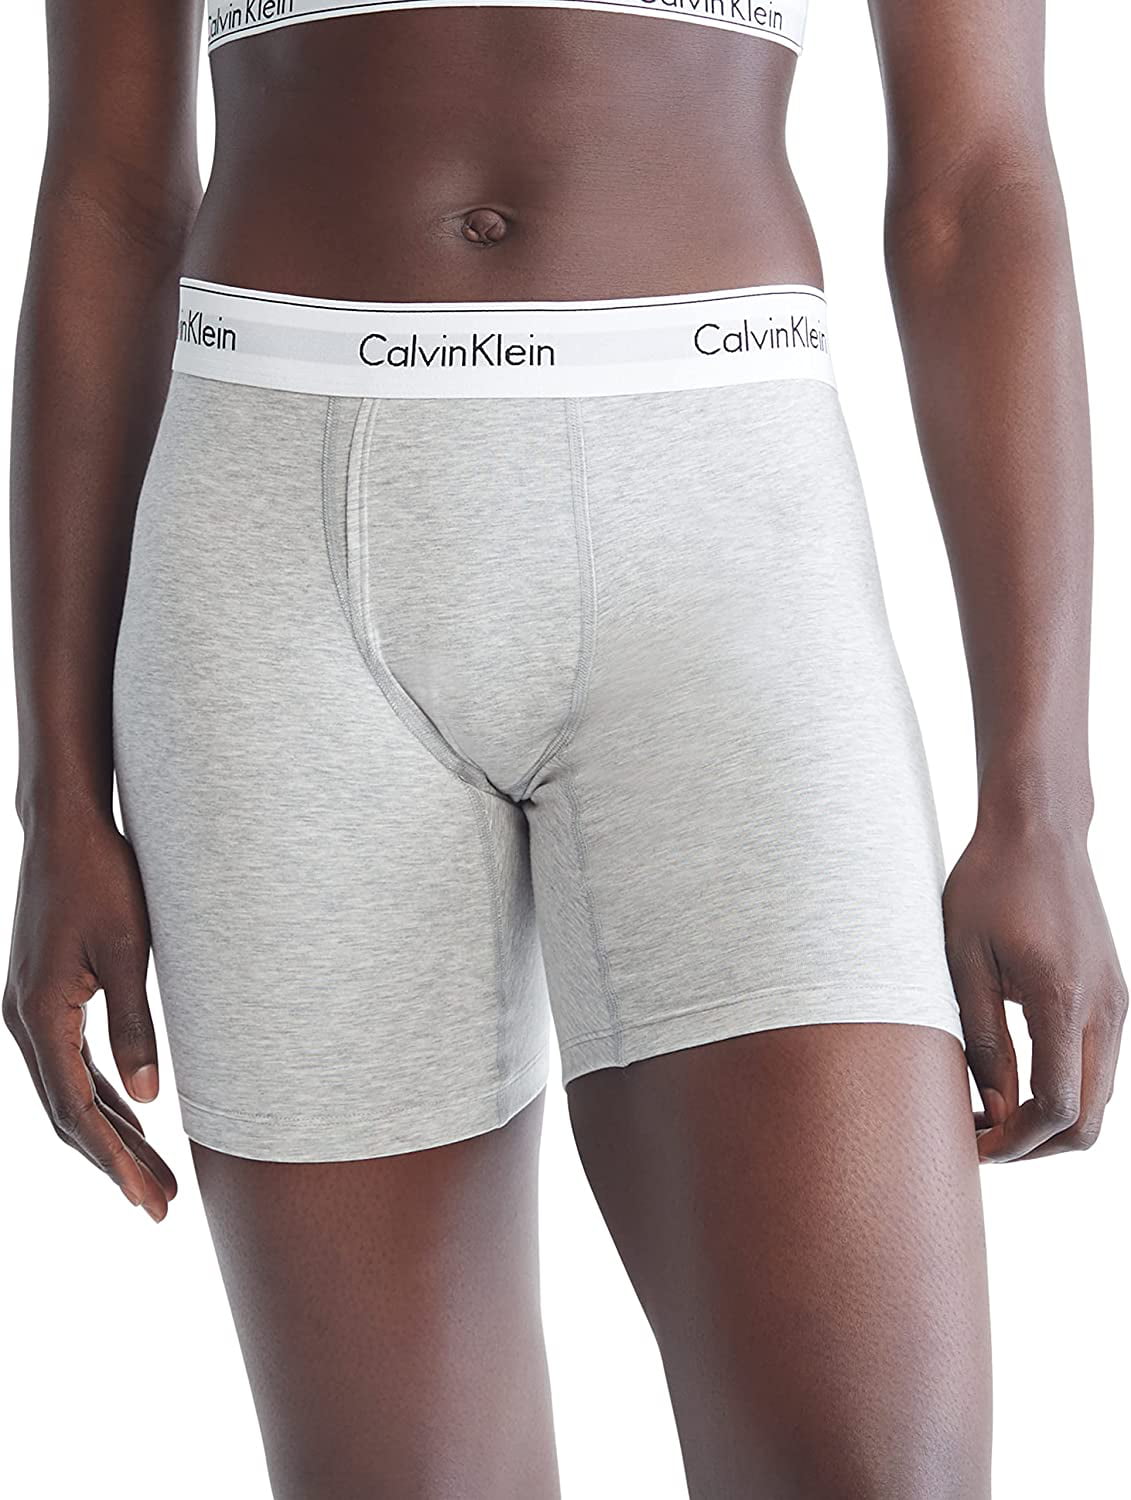 Calvin Klein Modern Cotton Brief - Walmart.com